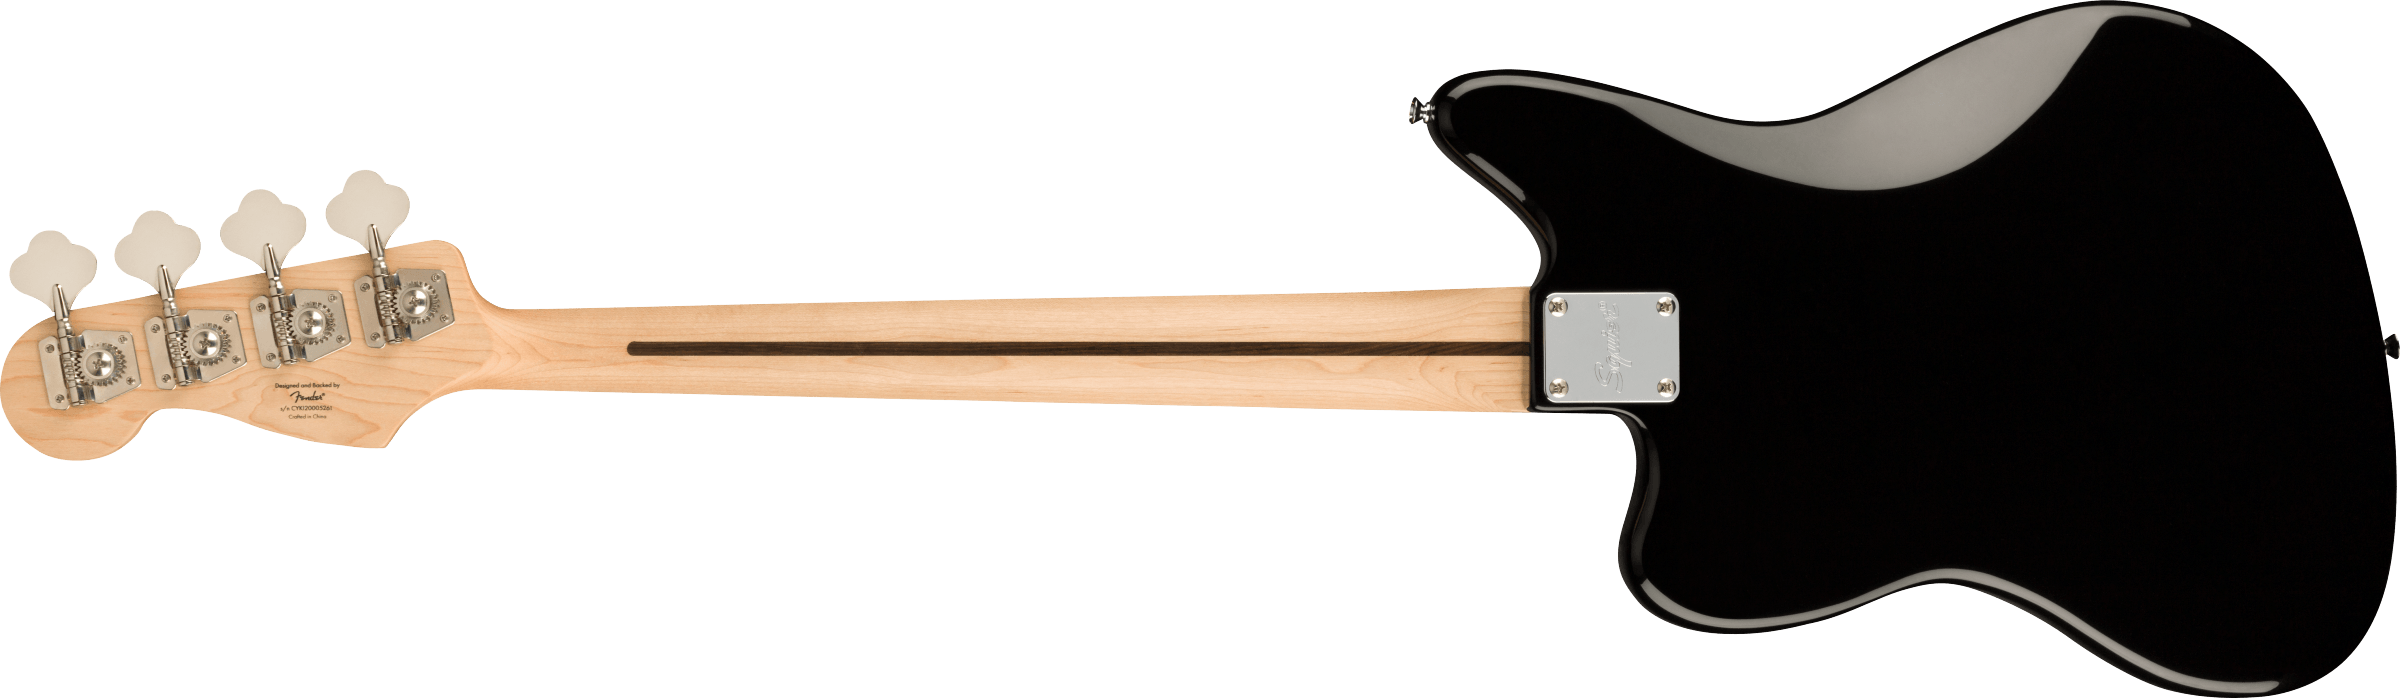 Squier Jaguar Bass Affinity 2021 Mn - Black - Bajo eléctrico de cuerpo sólido - Variation 1